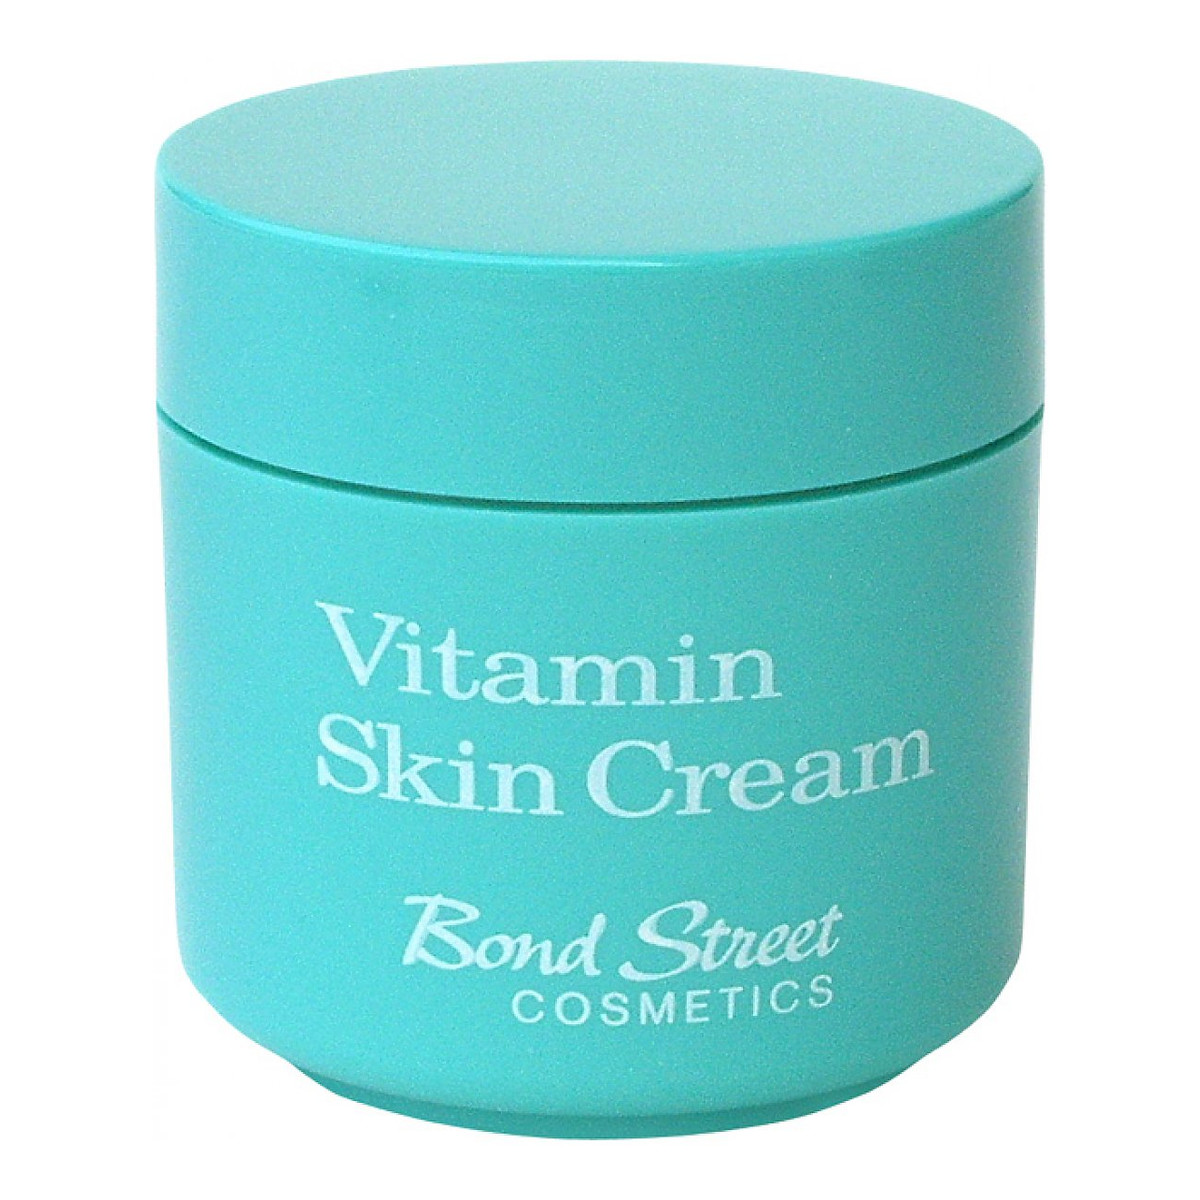 Bond Street Vitamin Skin Cream Krem Witaminowy Na Noc 6szt. Yardley